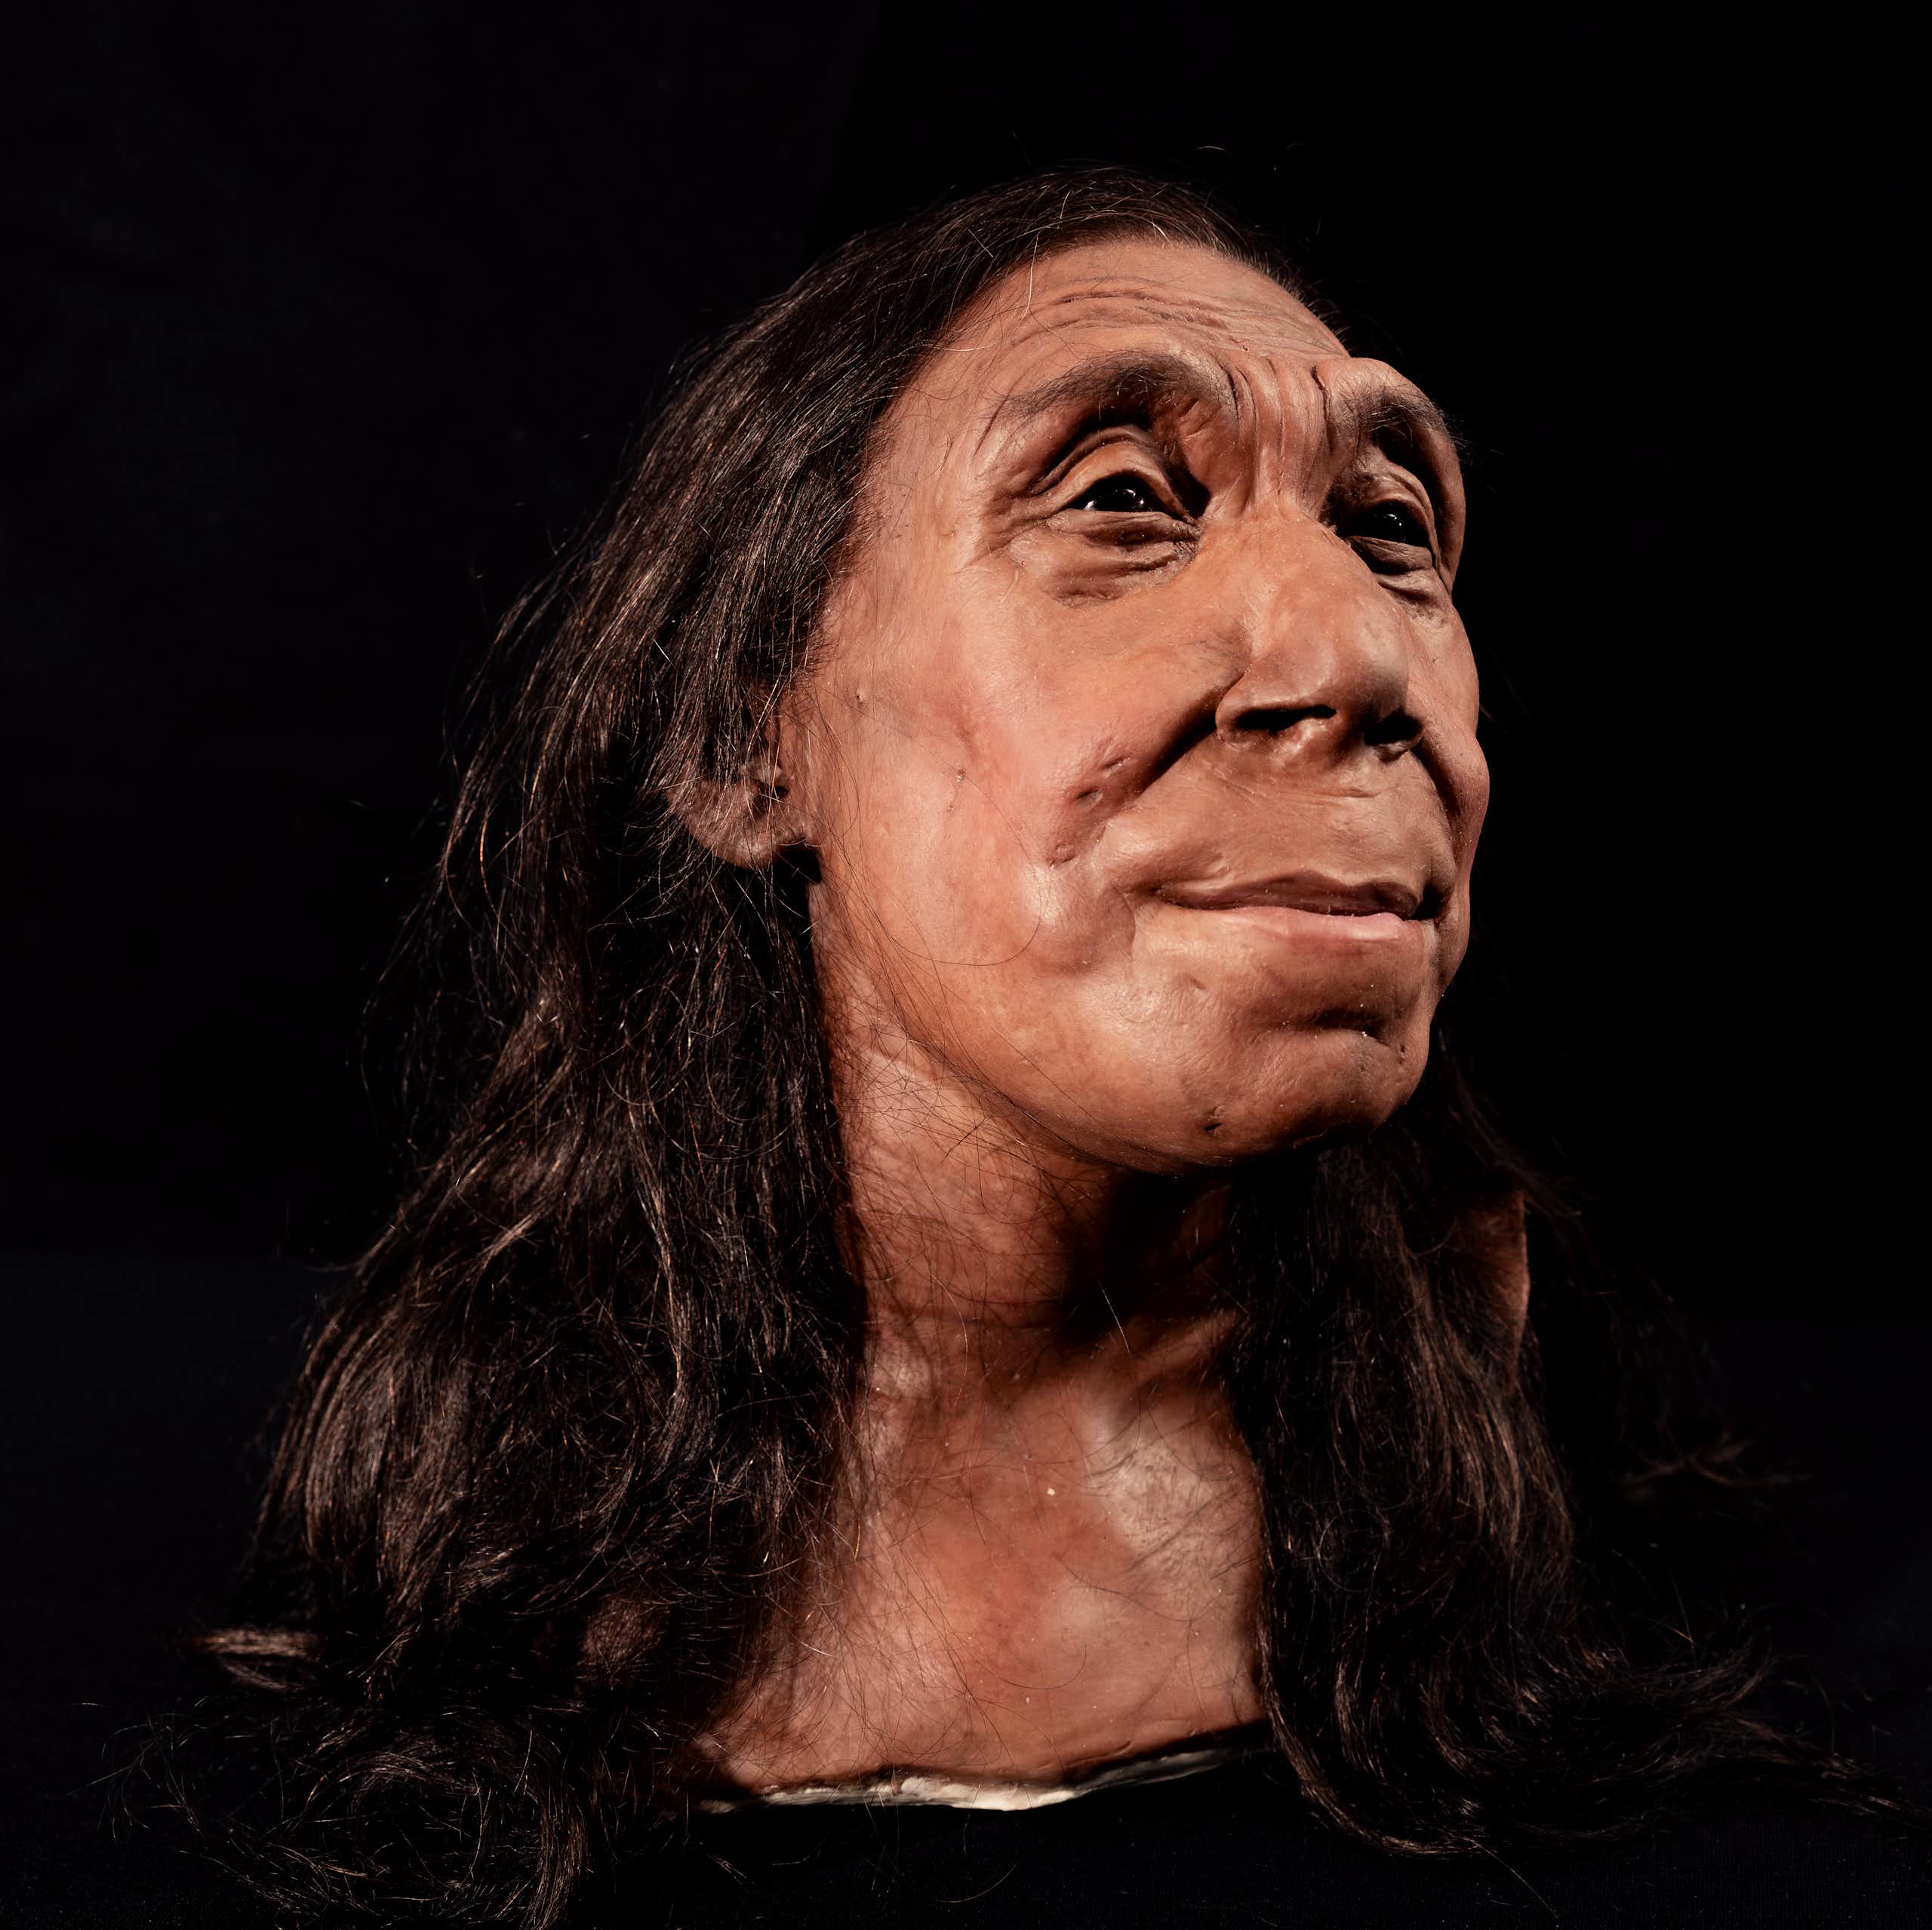 La reconstrucción del rostro de una mujer neandertal de hace 75 000 años la hace parecer simpática, pero hay un problema en su idealización